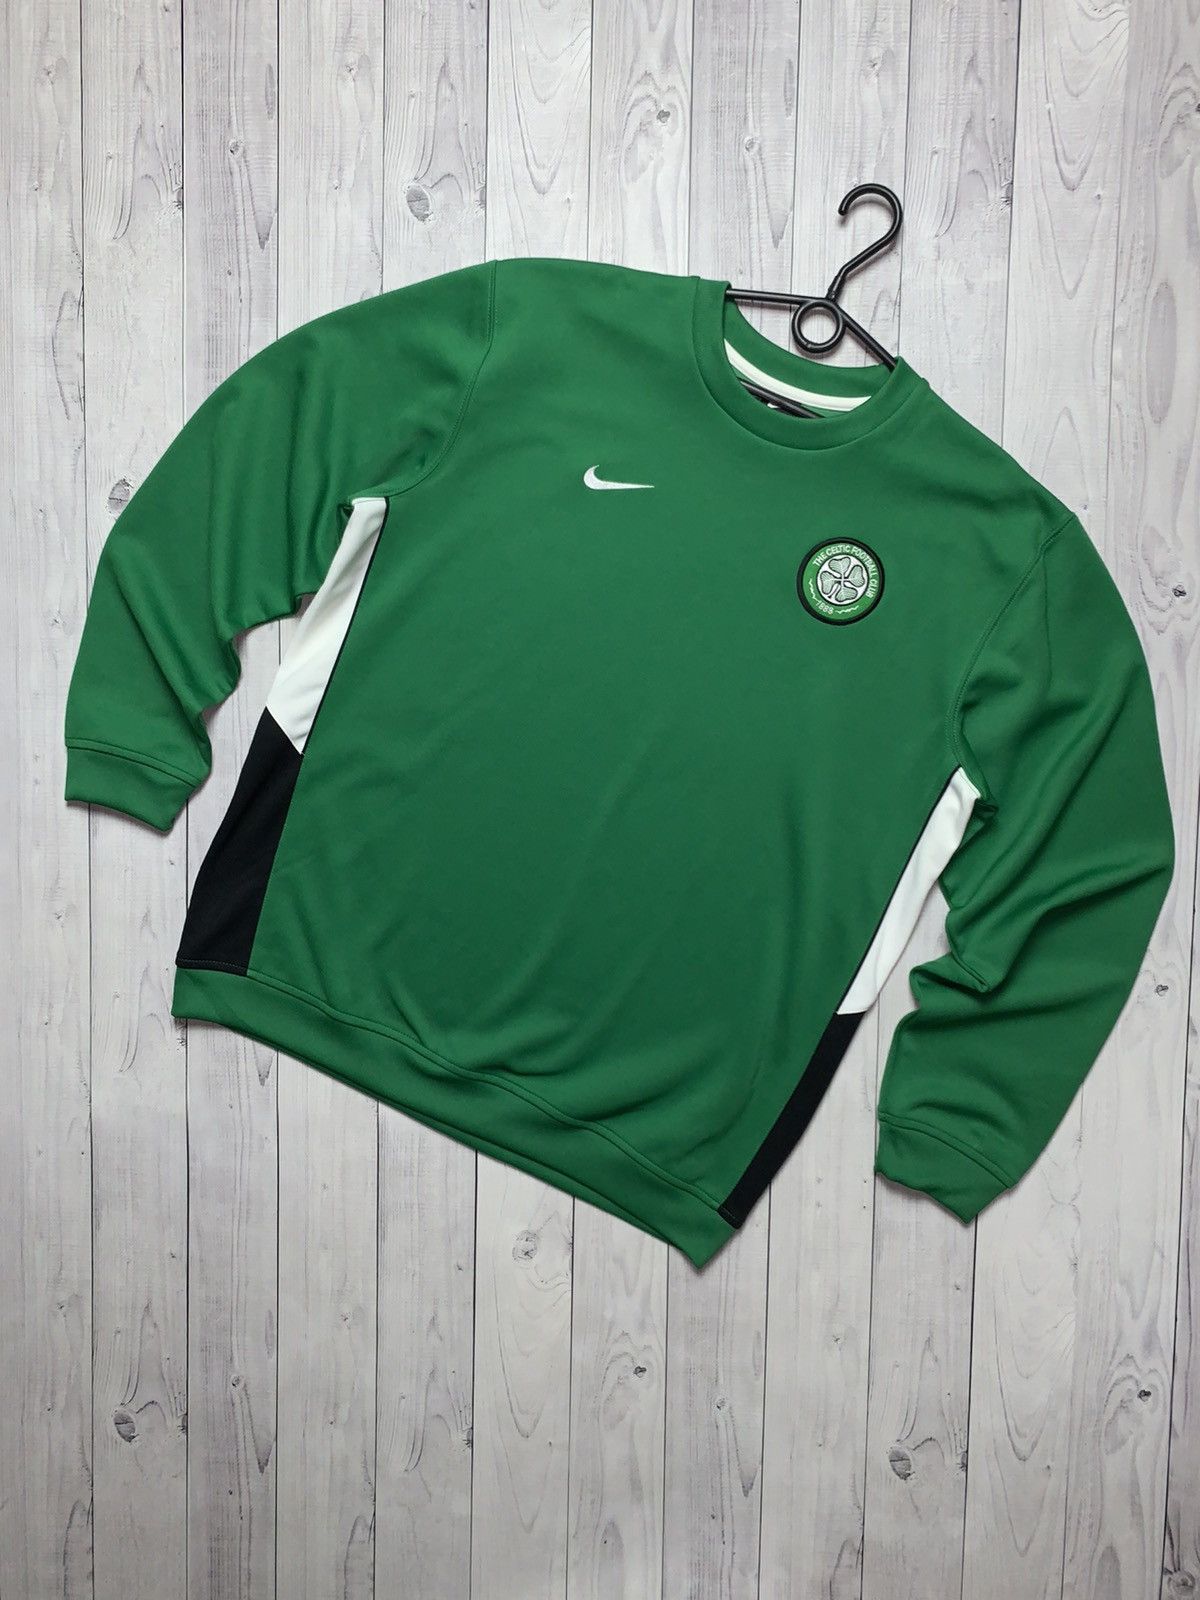 Pre-owned Nike X Soccer Jersey Vintage Nike Celtics Soccer Sweatshirt Size L In Green